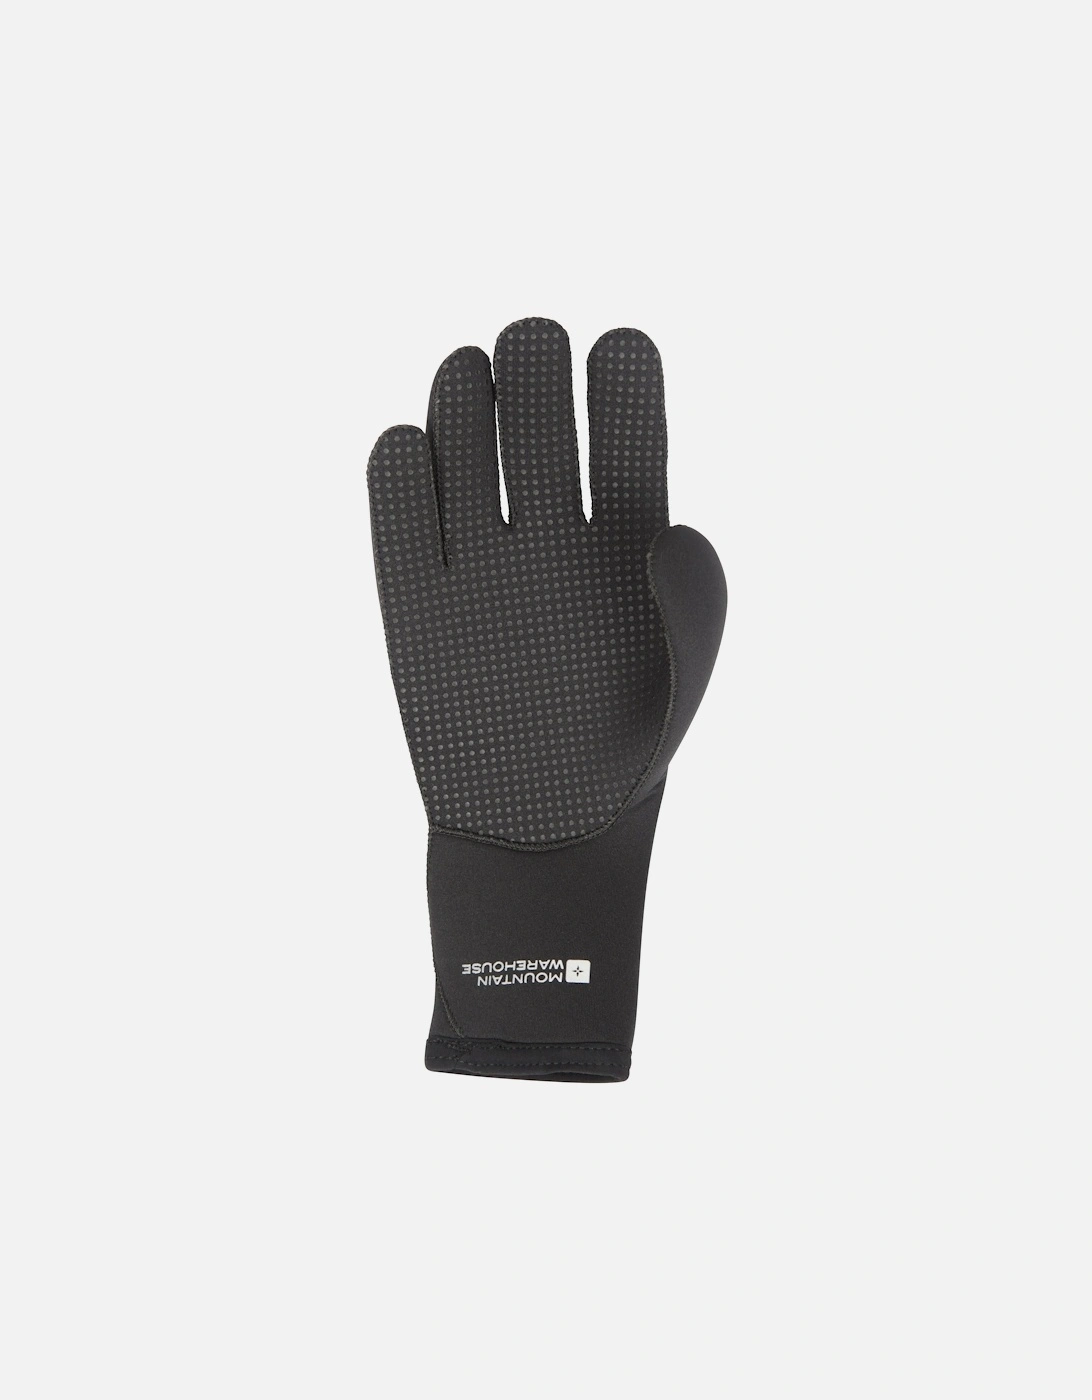 Unisex Adult Neoprene Swimming Gloves